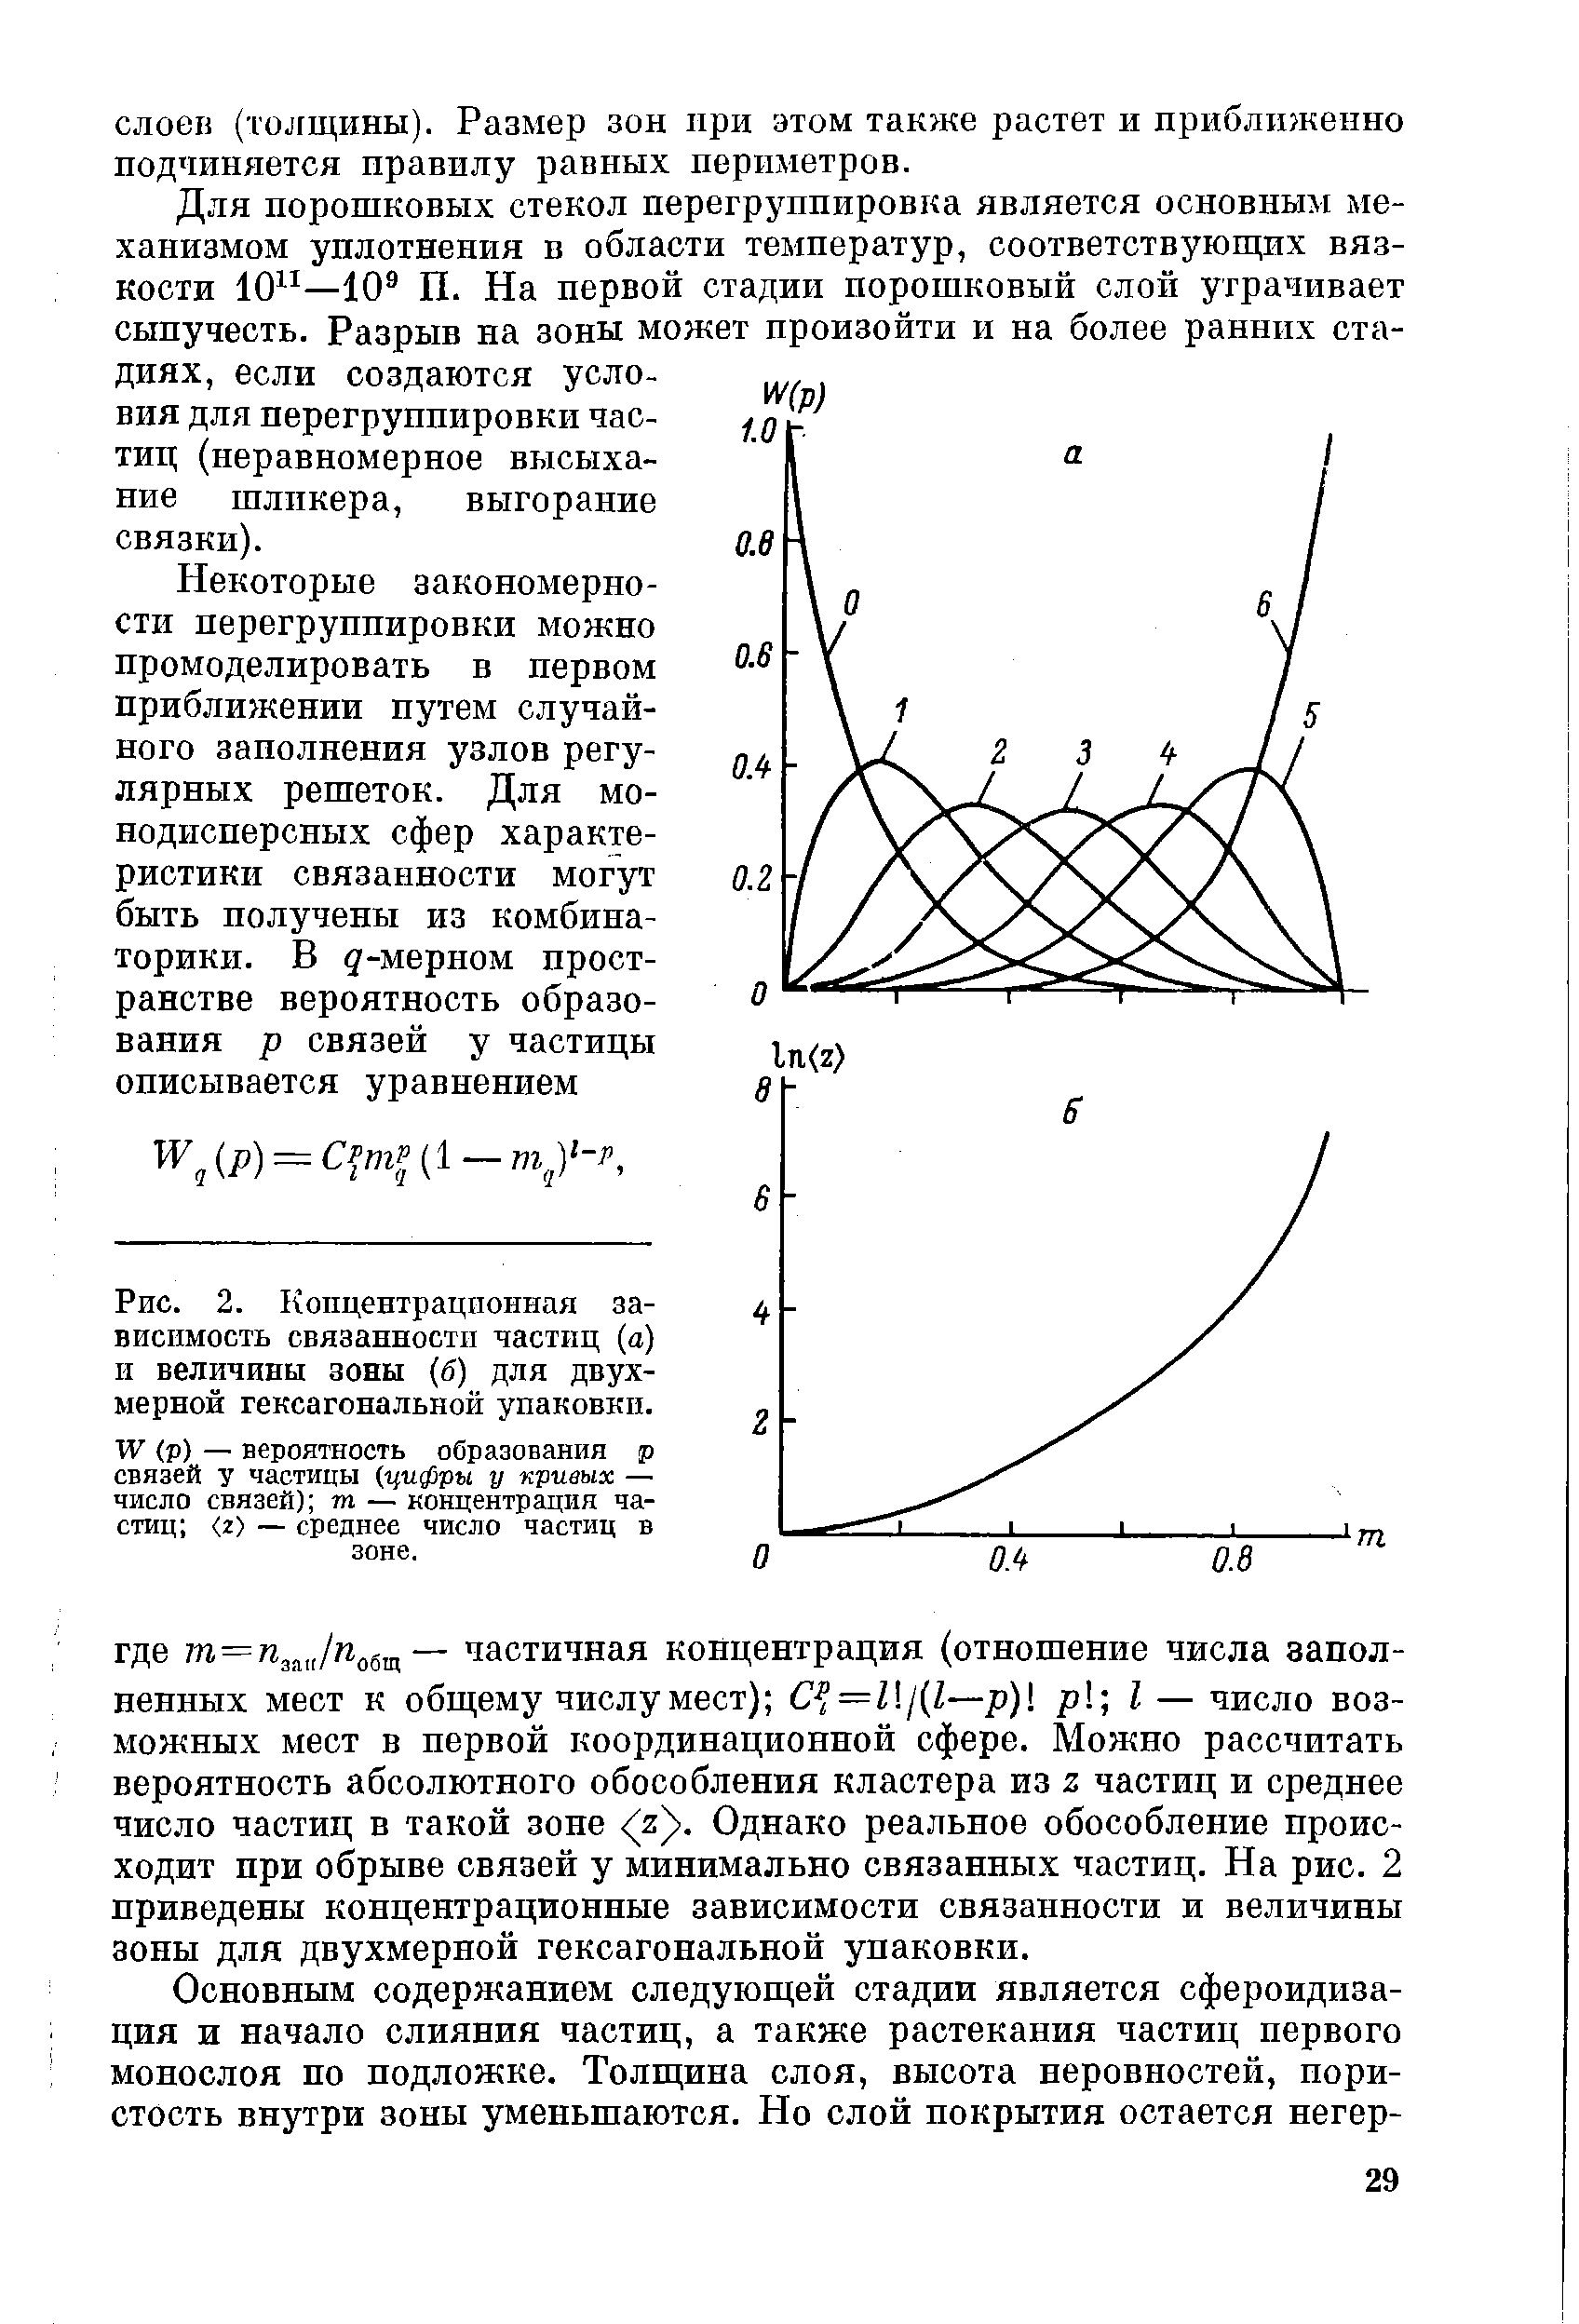 Рис. 2. Концентрационная зависимость связанности частиц (а) II величины зоны (б) для двухмерной гексагональной упаковки.
